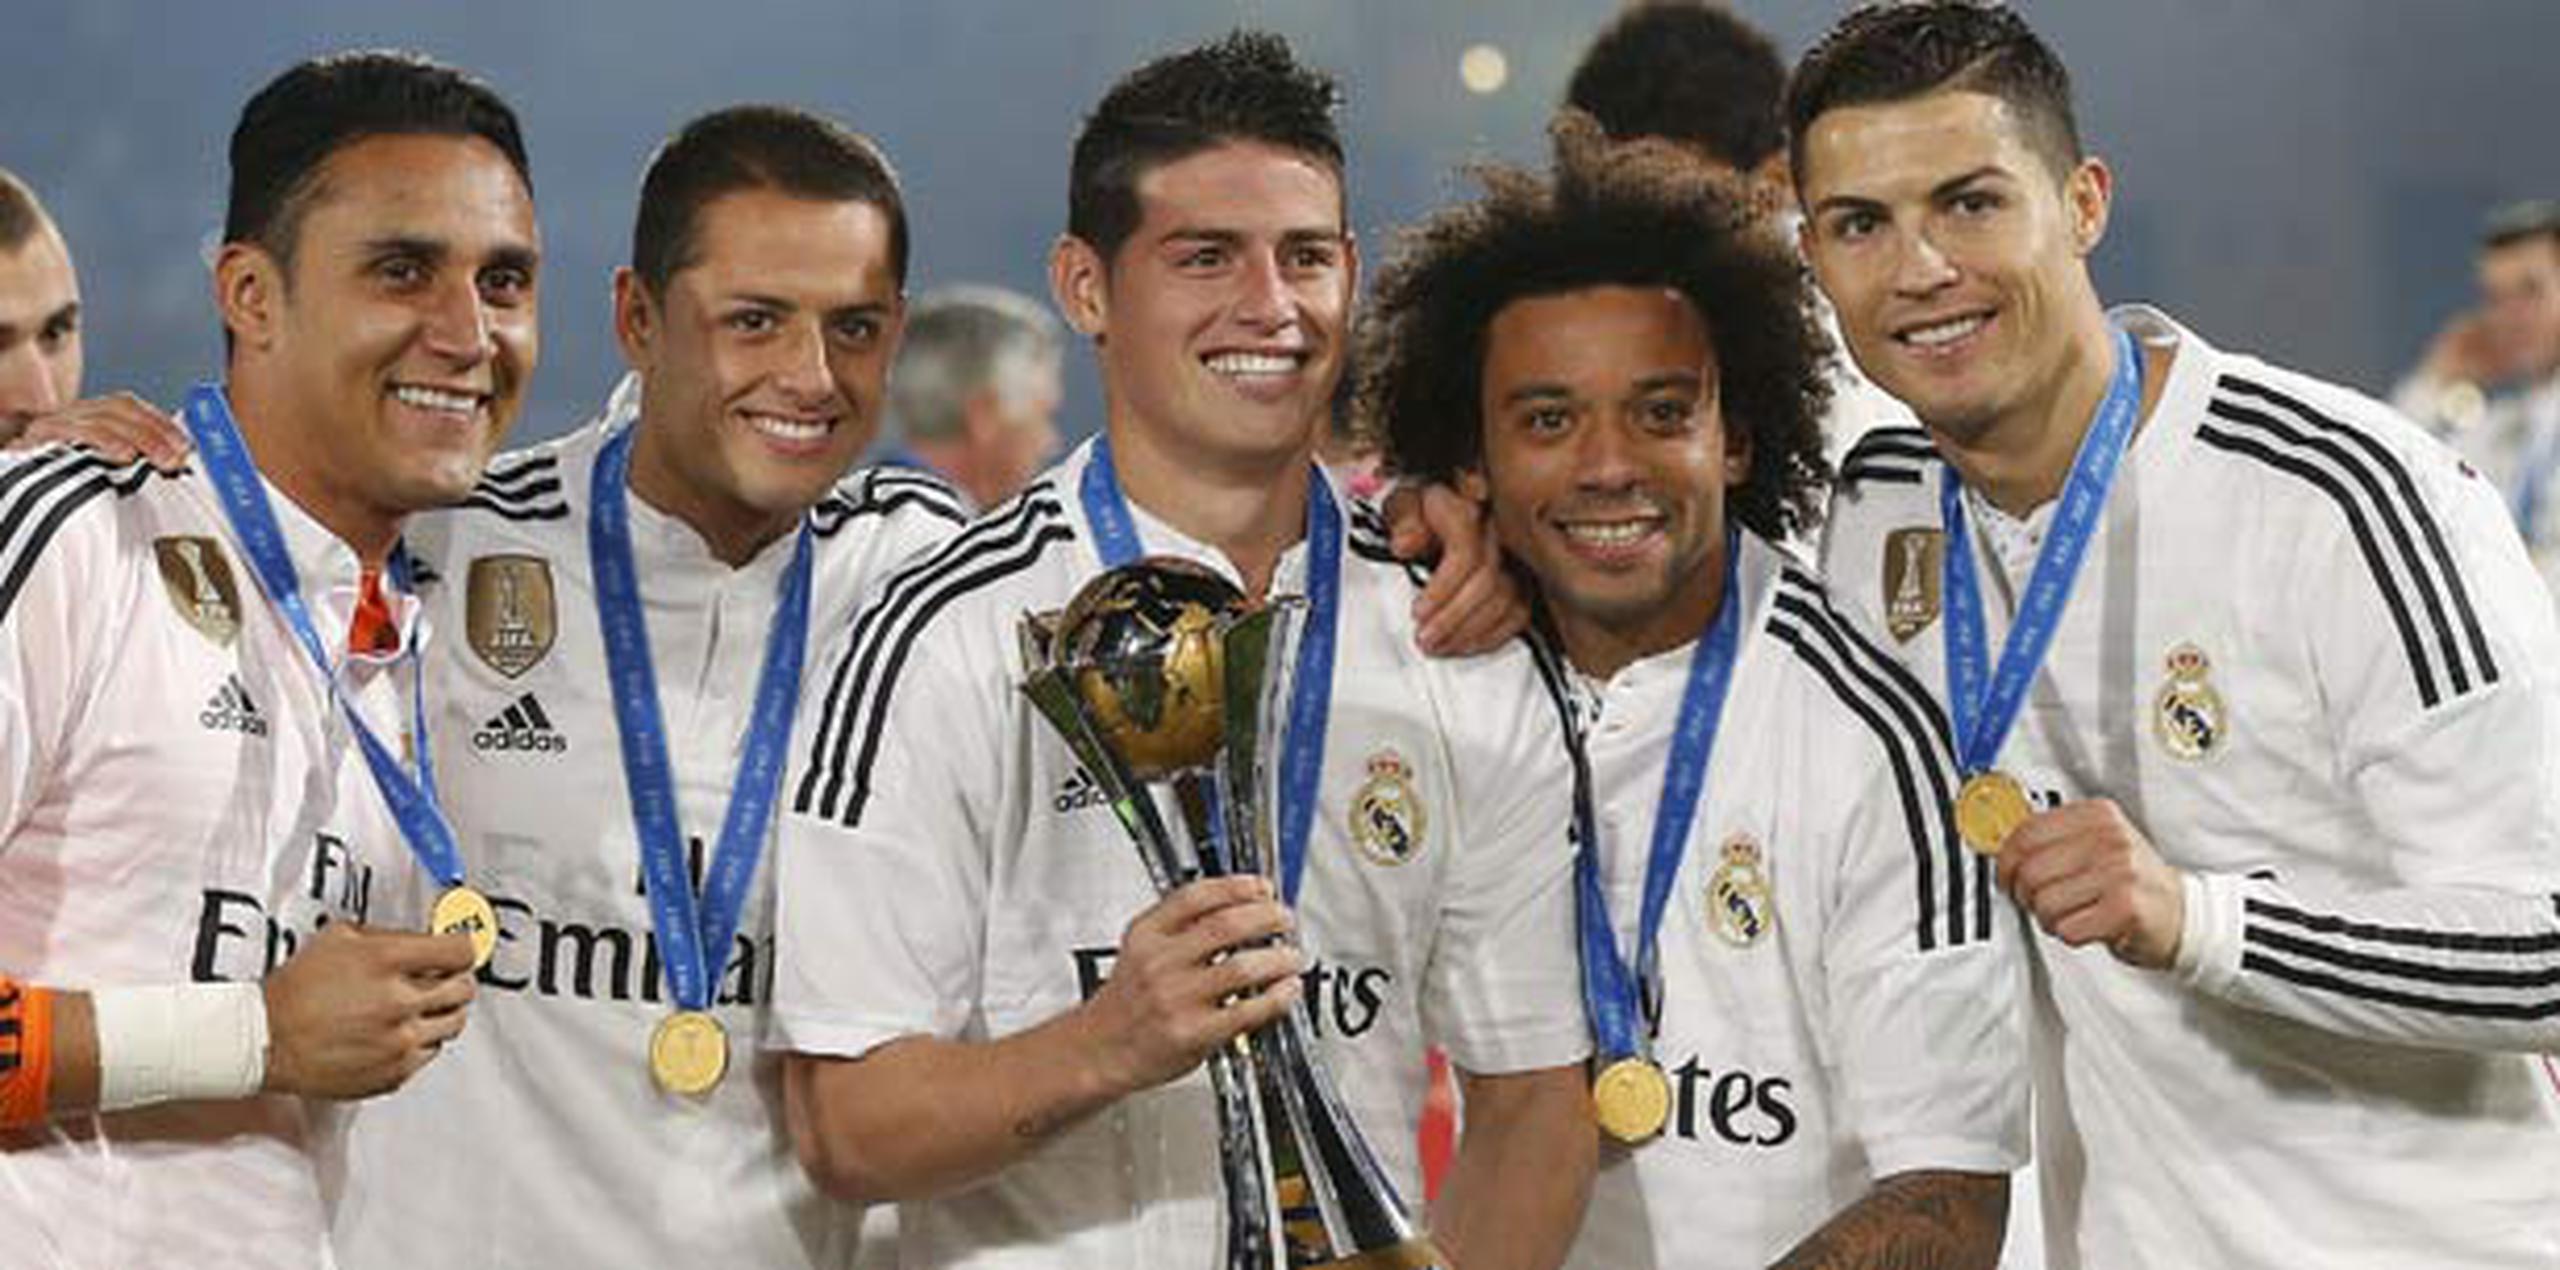 Jugadores del Real Madrid, encabezados por James Rodríguez (con trofeo en mano) y Cristiano Ronaldo, a la extrema derecha celebran el reciente título del Mundial de Clubes que ganó el monarca europeo. (EFE / Chema Moya)